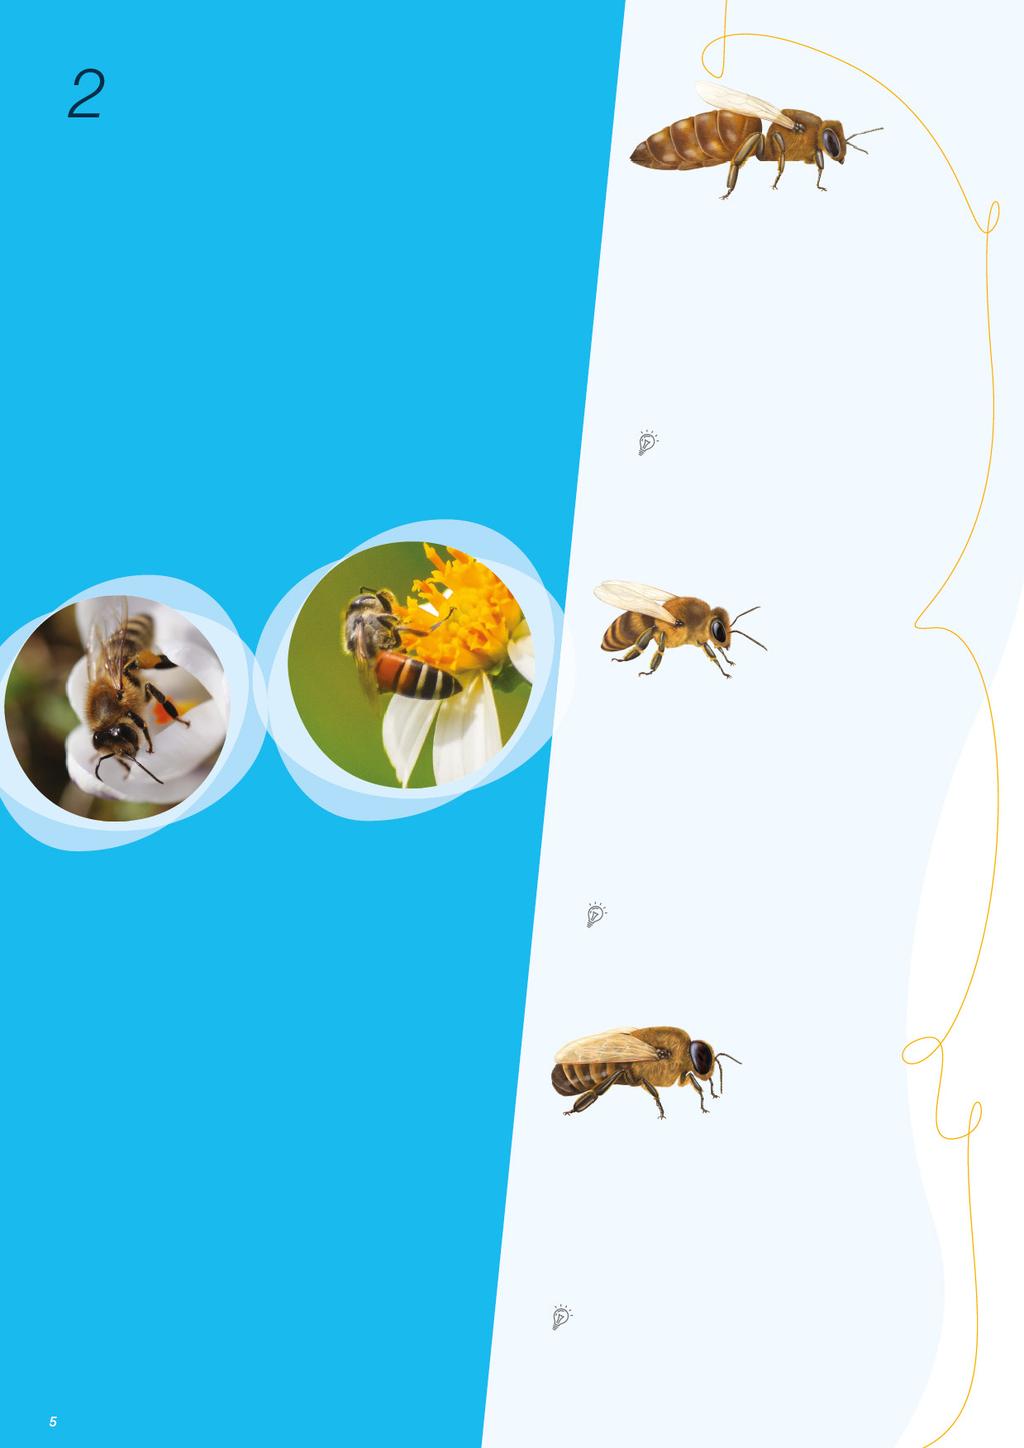 A kaptárban A méhkolóniák kollektívaként (szuperorganizmusként) működnek: nagyon magas társadalmi szervezettségben élnek, melyben felosztják egymás közt a szaporodás és kolóniaellátás feladatait.